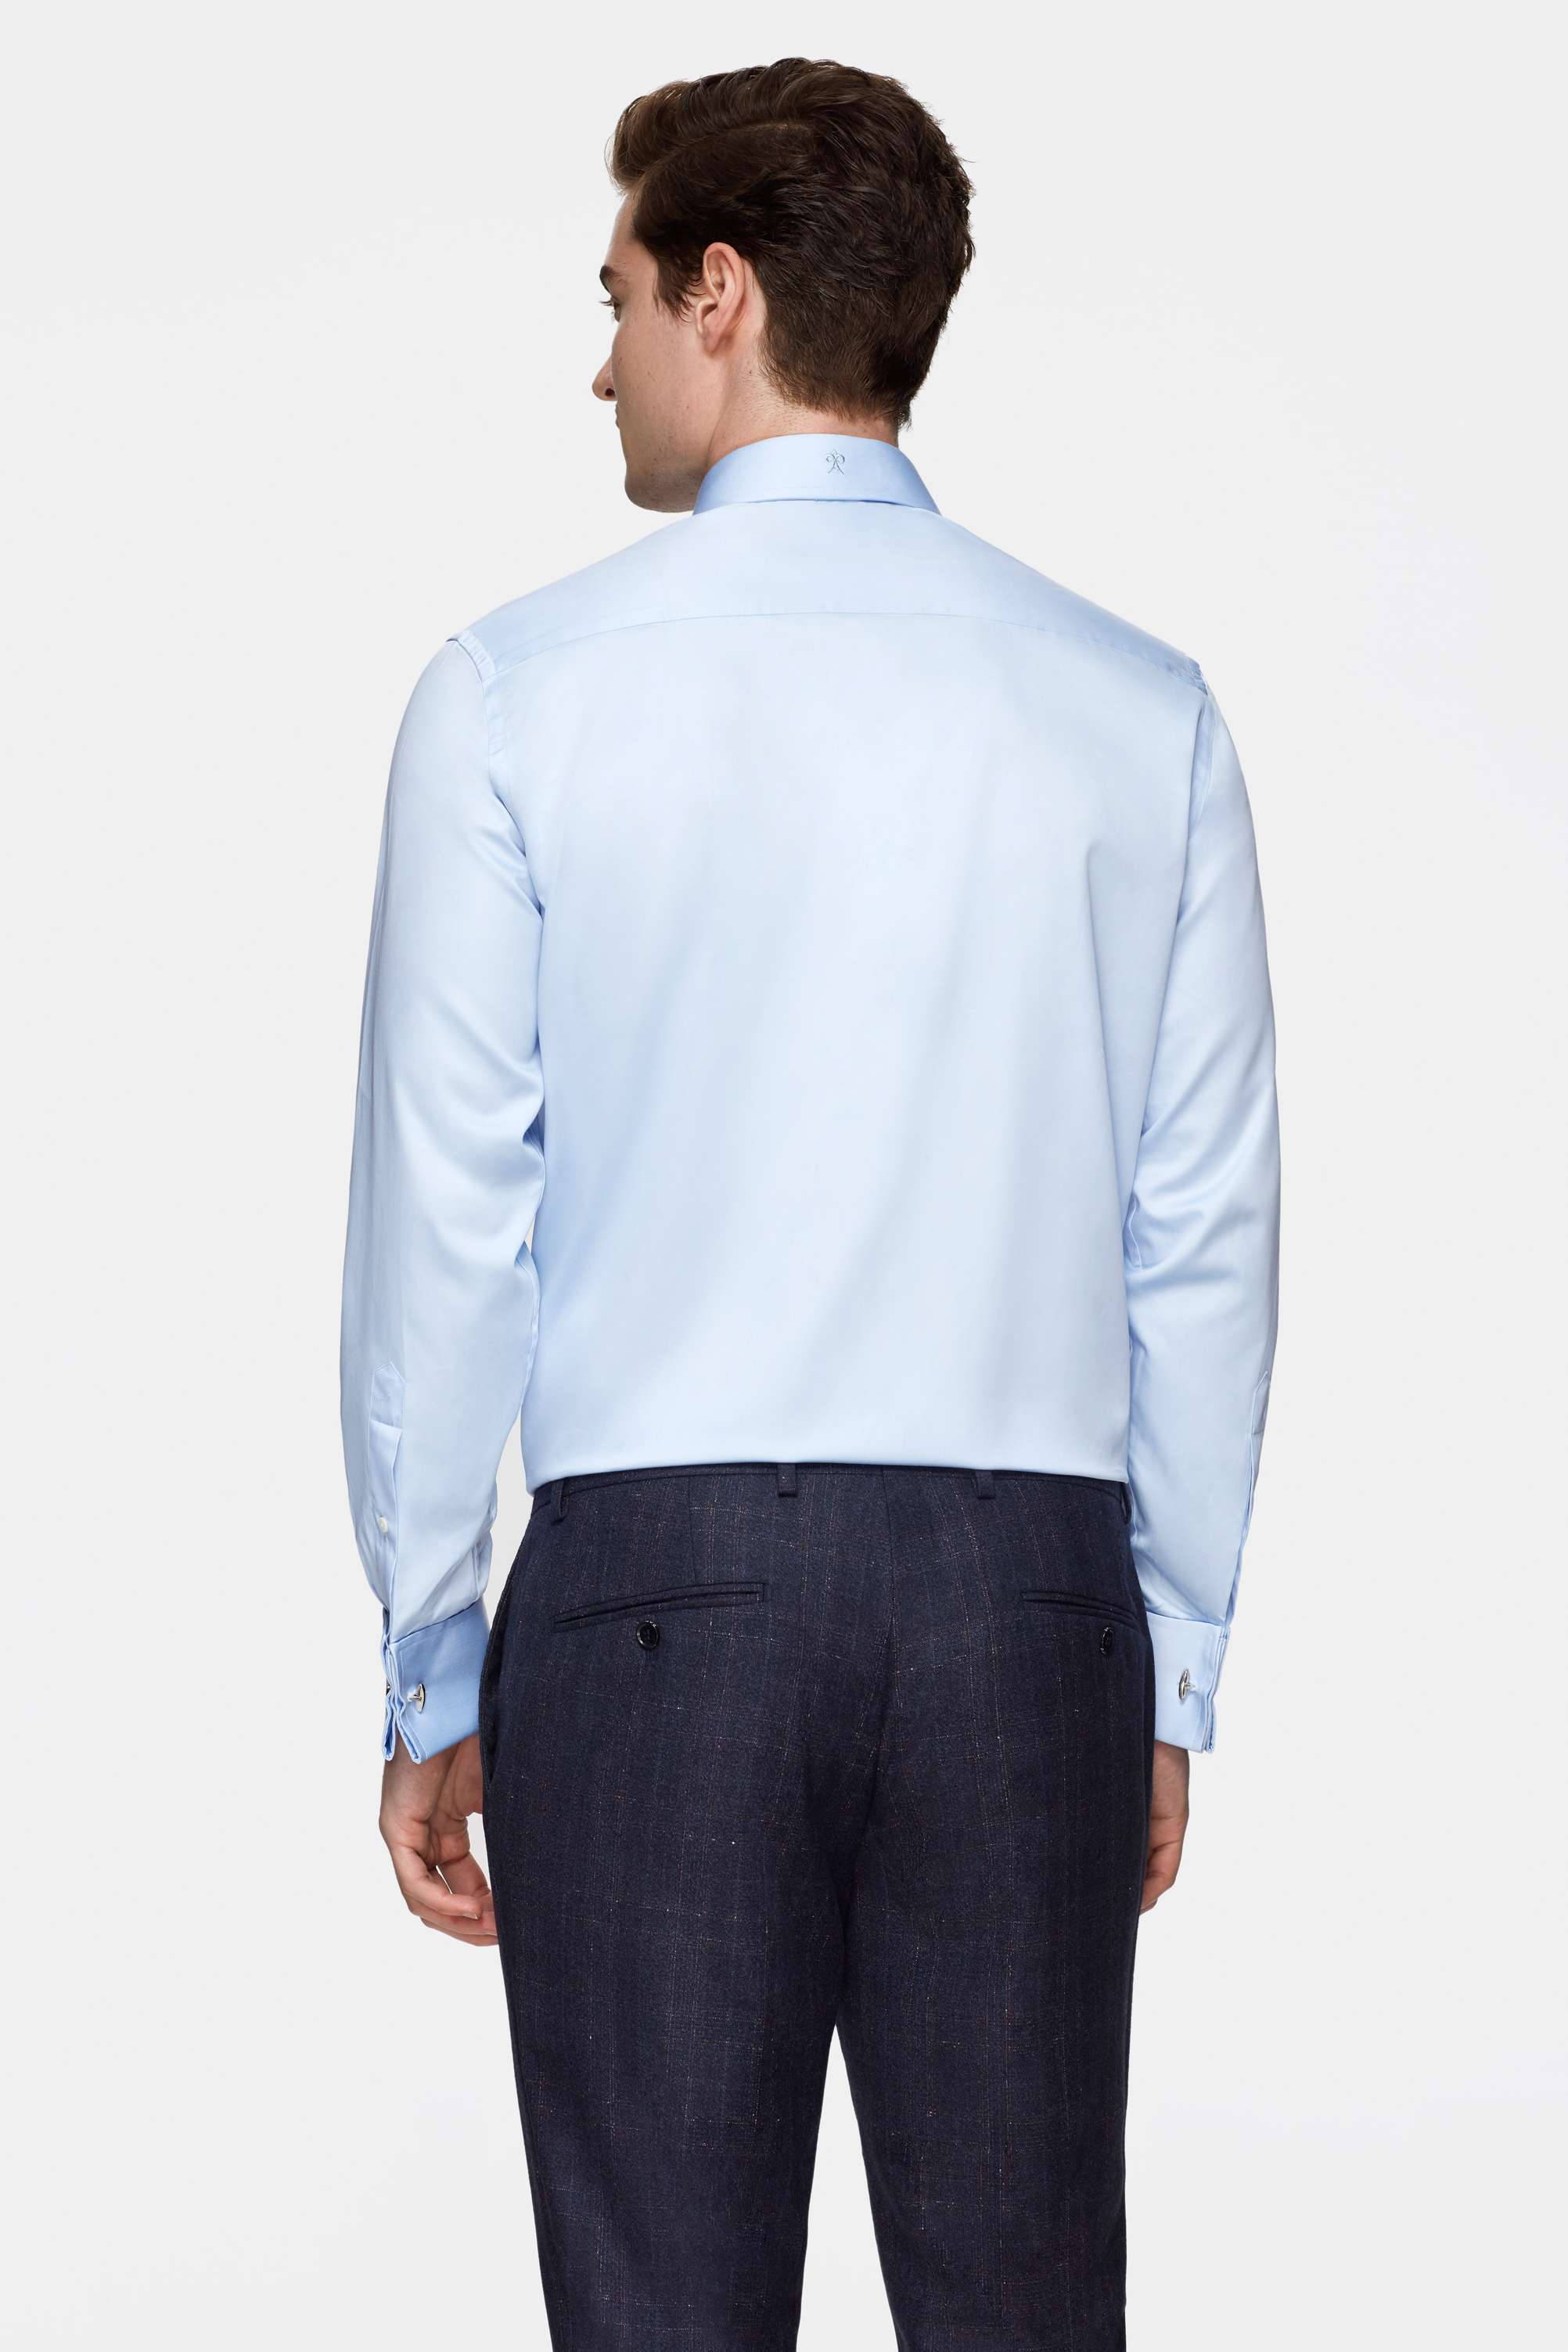 Damat Tween Damat Comfort Açık Mavi Düz Nano Care Gömlek. 4